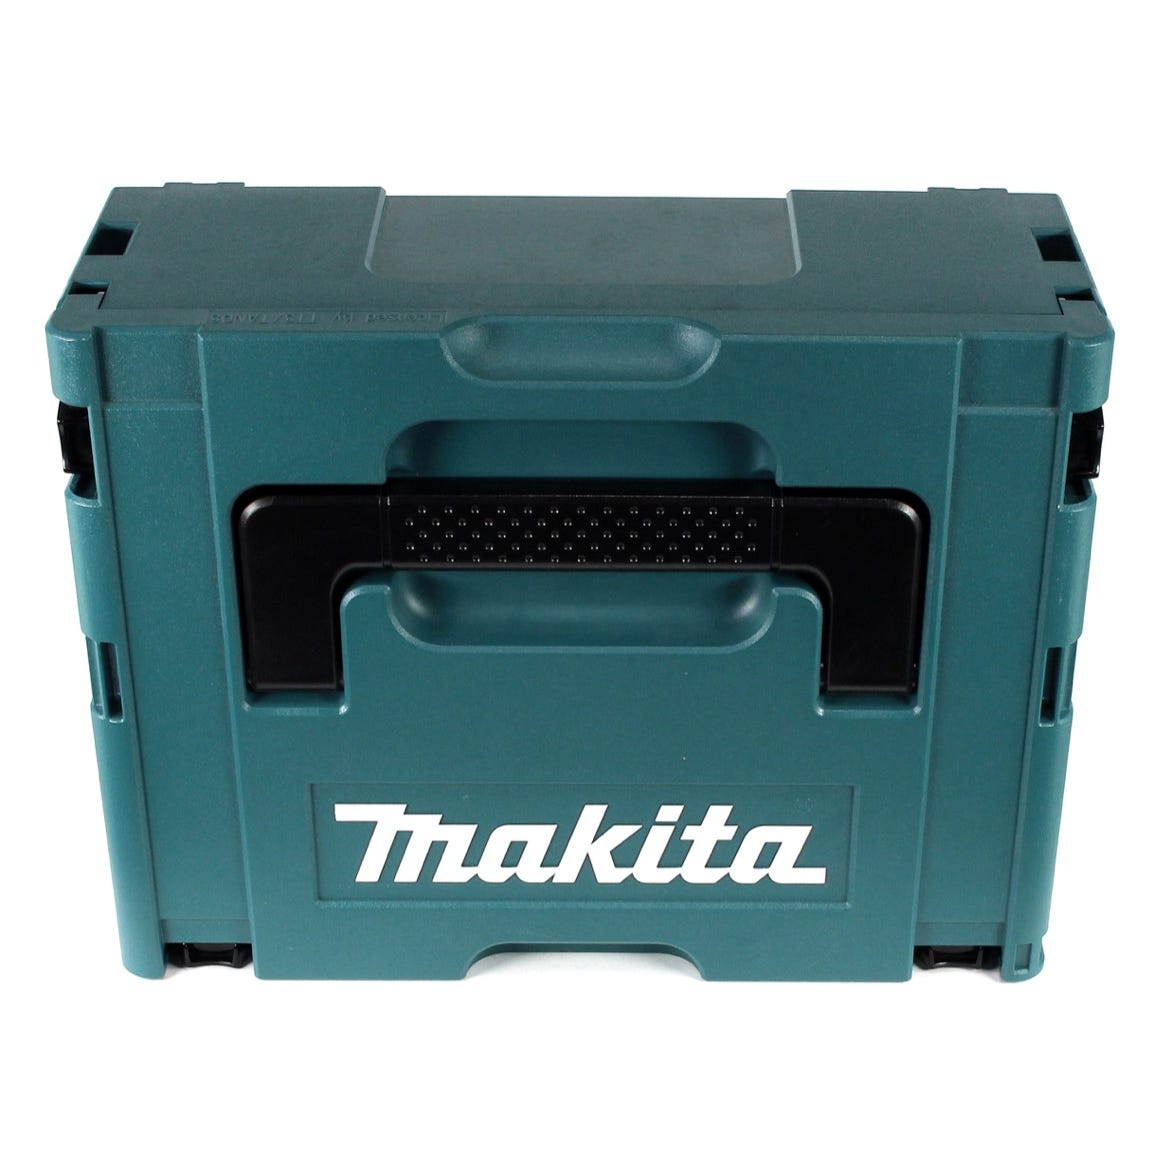 Makita DDF 459 T1J 18 V Li-Ion Perceuse visseuse sans fil + Coffret MakPac + 1 x Batterie 5,0 Ah - sans Chargeur 2